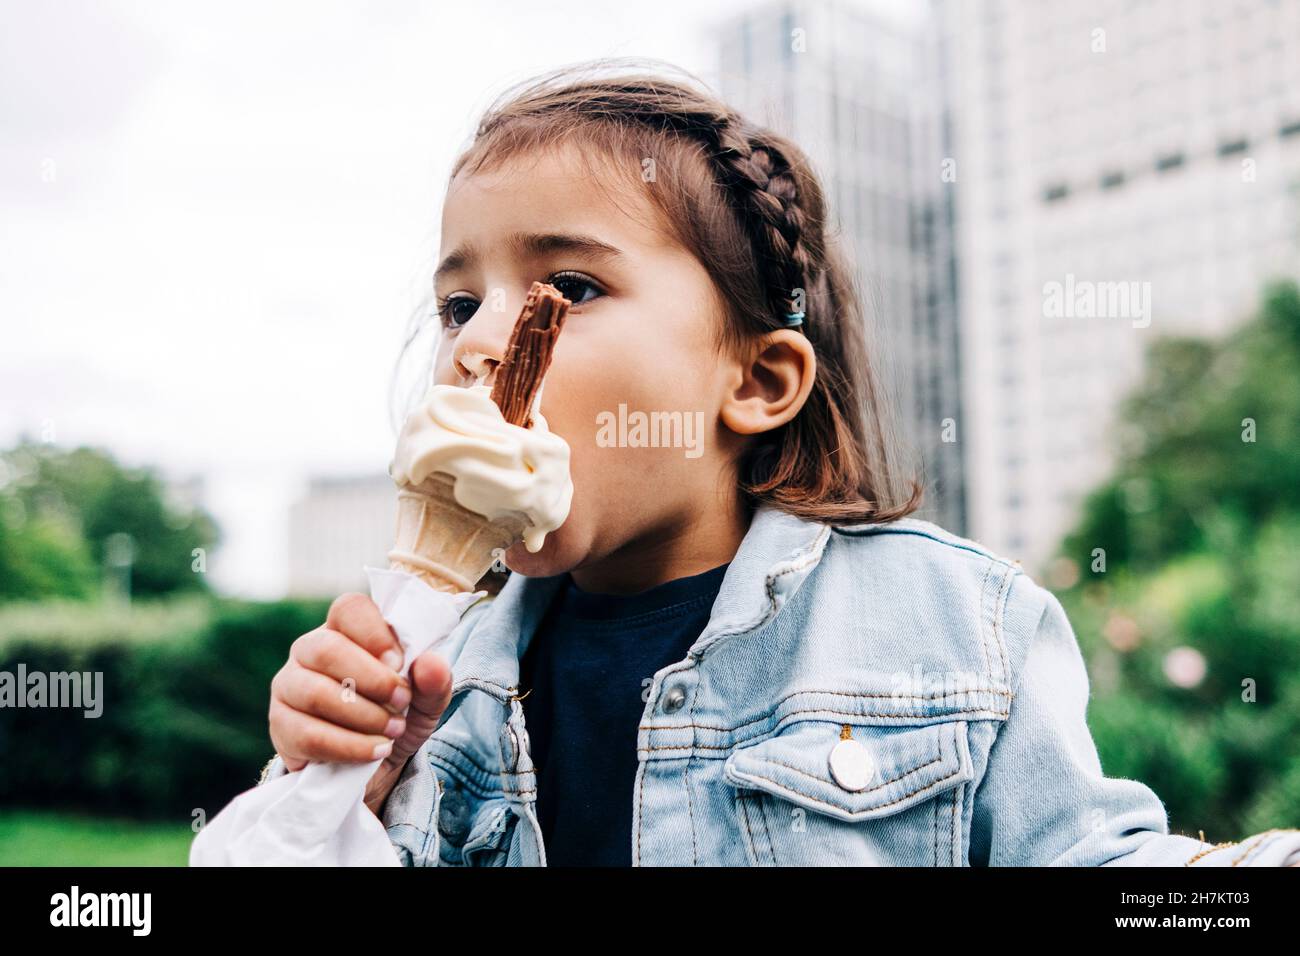 Mädchen, das Eis im öffentlichen Park isst Stockfoto